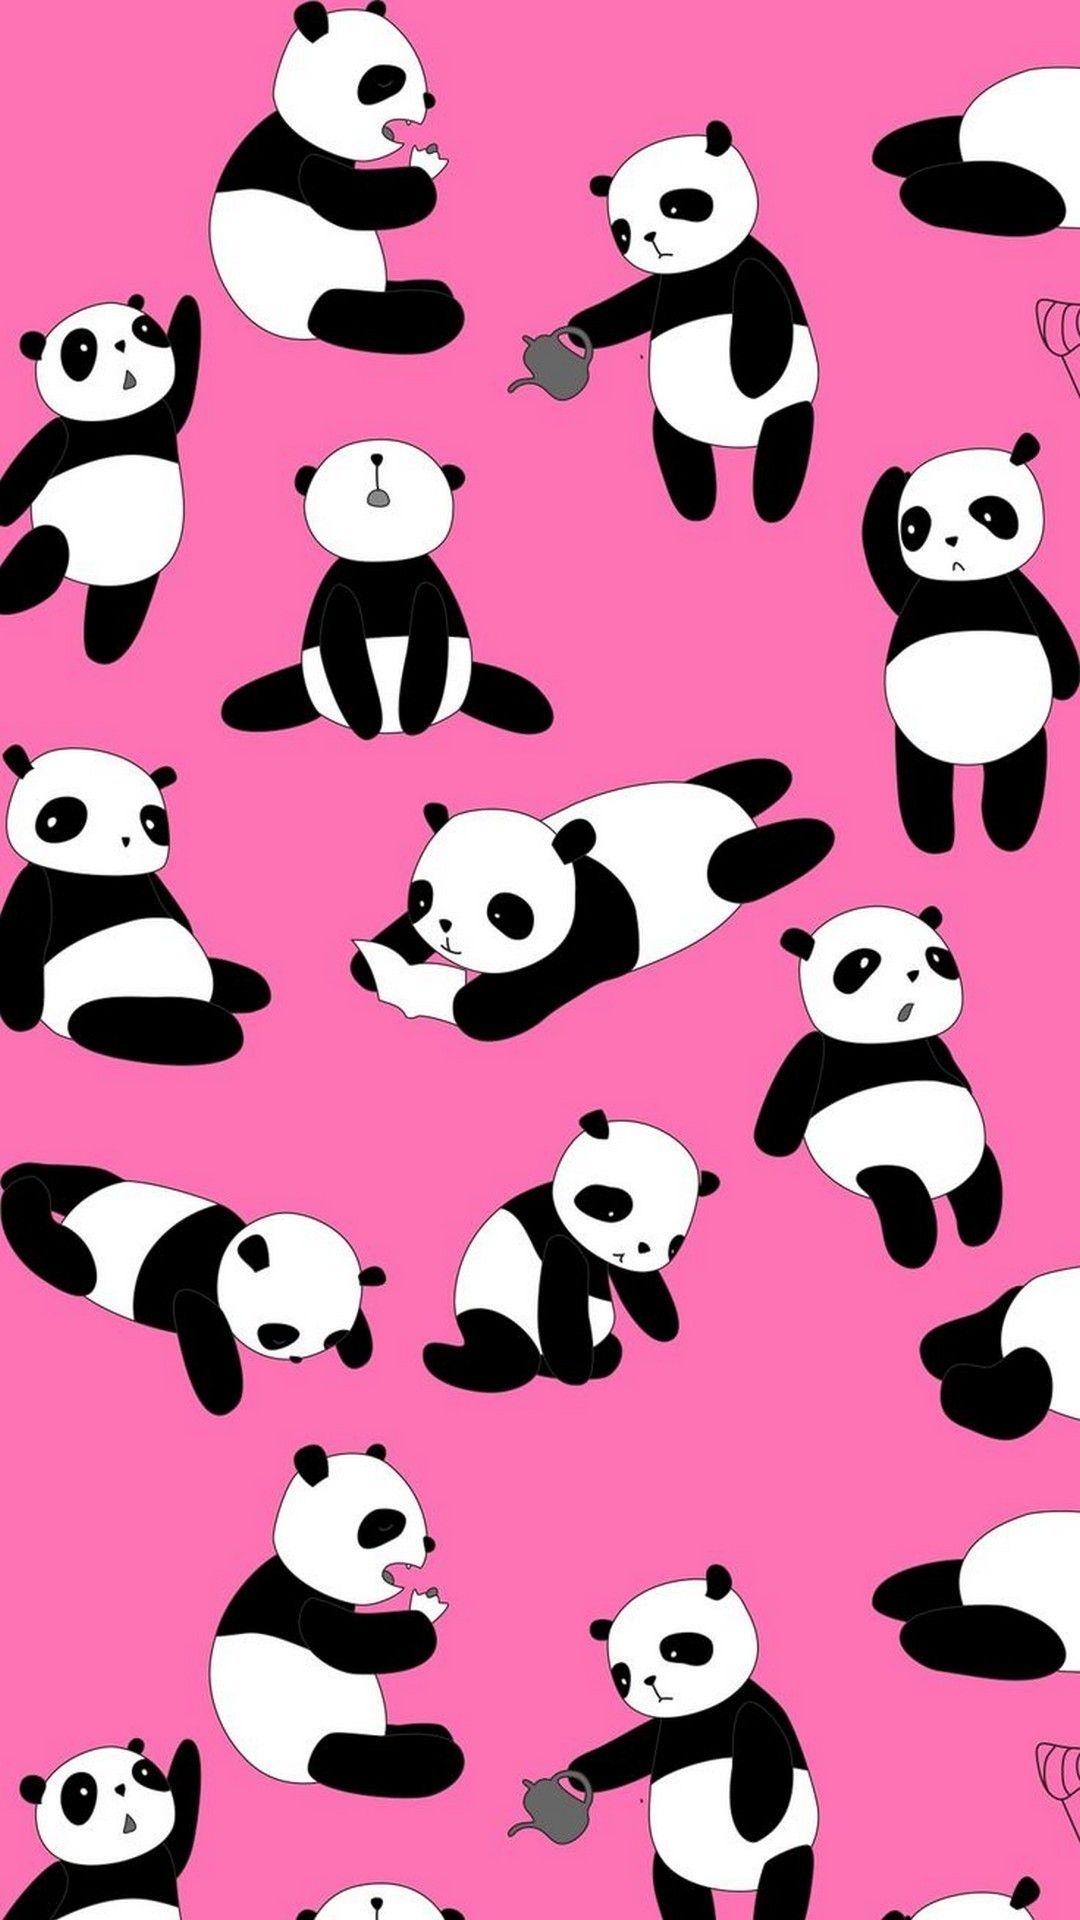 Kawaii Cute Panda Wallpapers - Top Free Kawaii Cute Panda ...